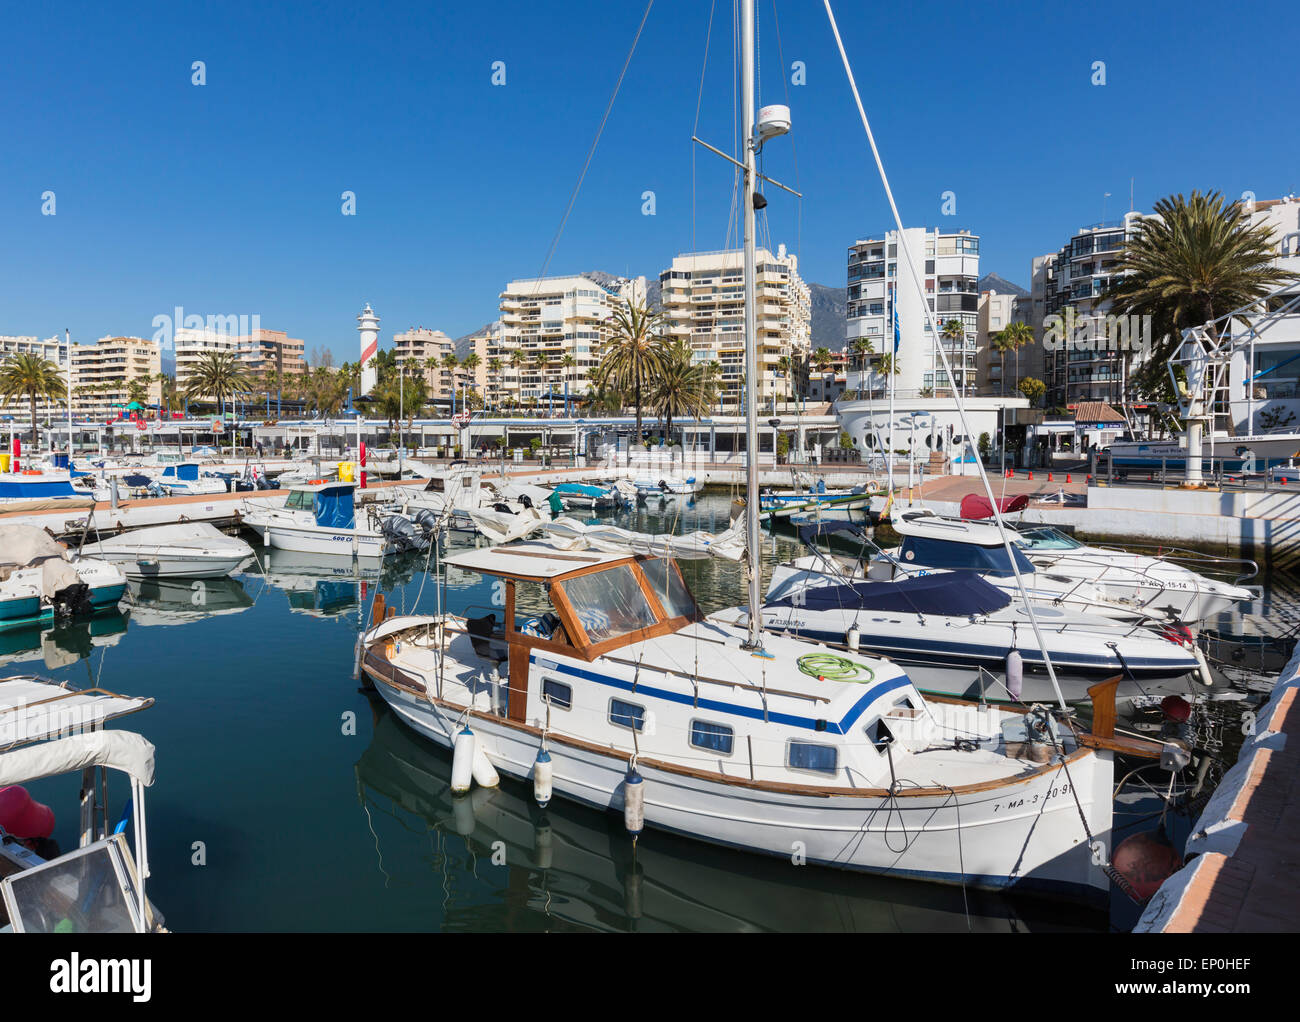 Marbella, Costa del Sol, Malaga Province, Andalusia, southern Spain. Sports Port.  Puerto Deportivo. Stock Photo